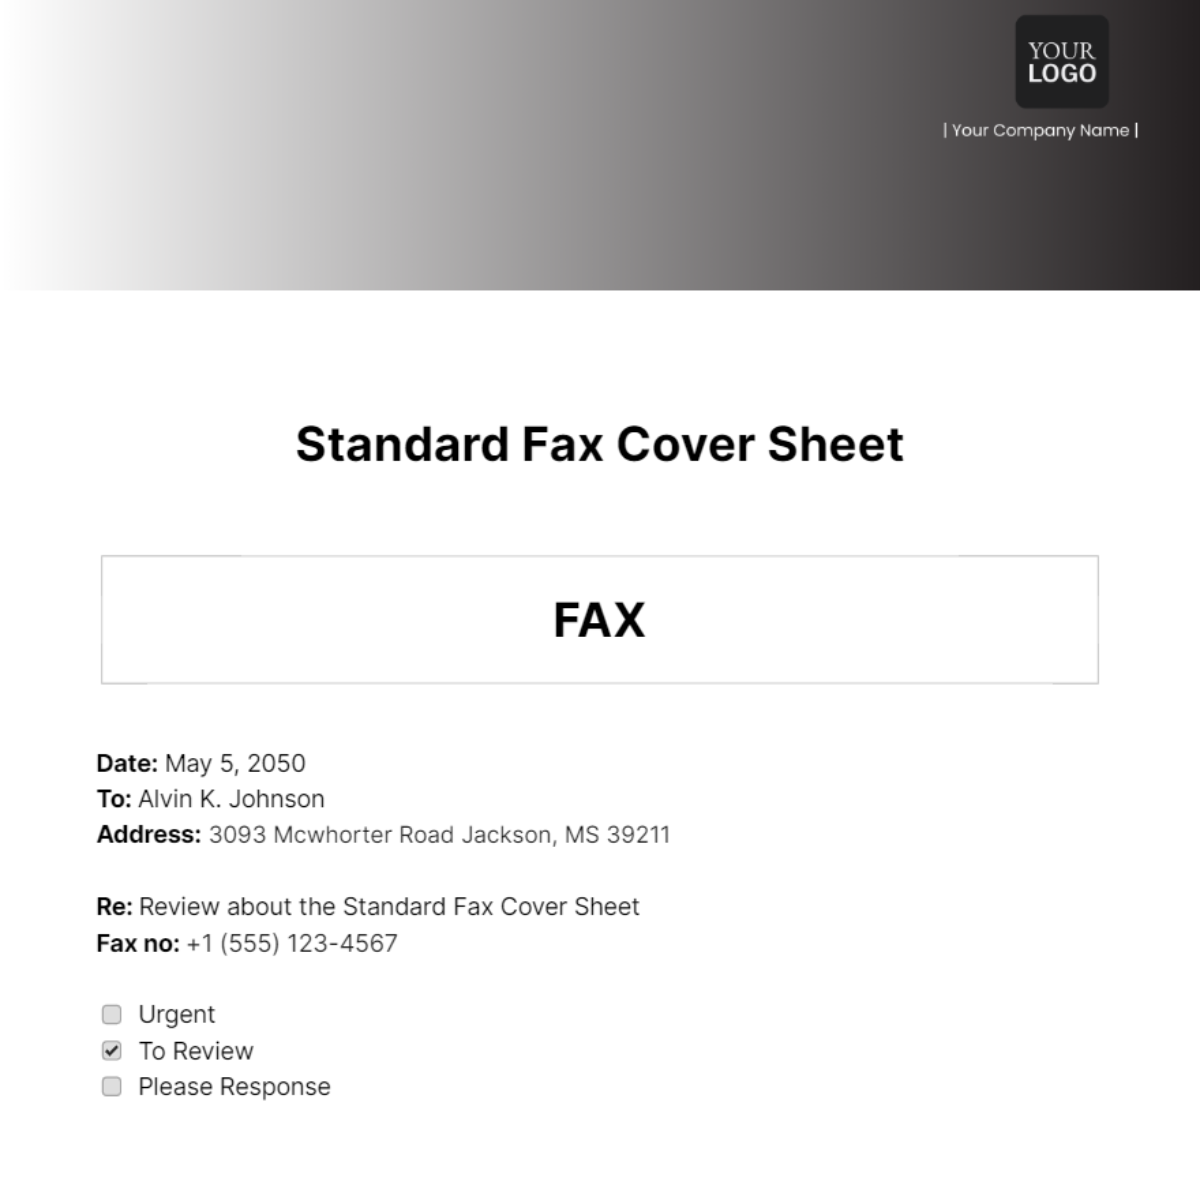 Standard Fax Cover Sheet